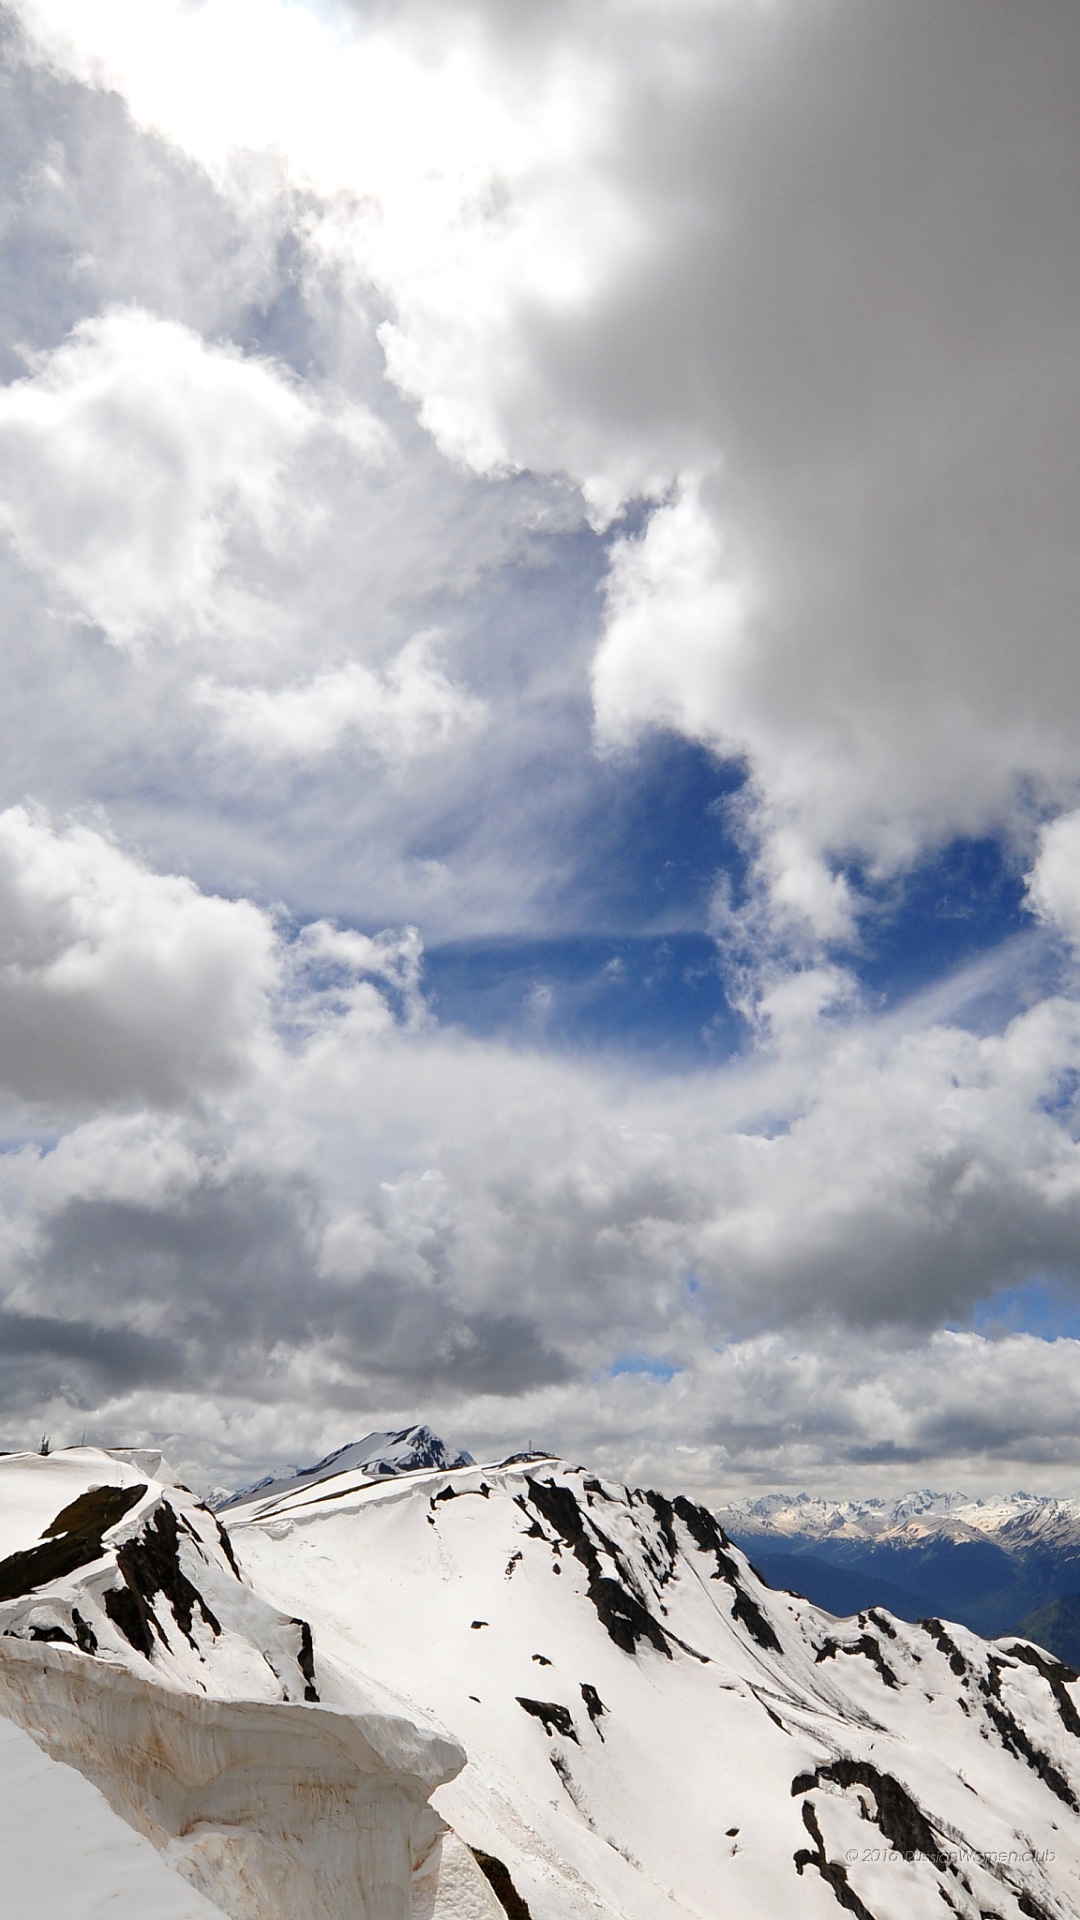 1080 x 1920 pixels fonds d'écran hd,ciel,montagne,chaîne de montagnes,nuage,neige